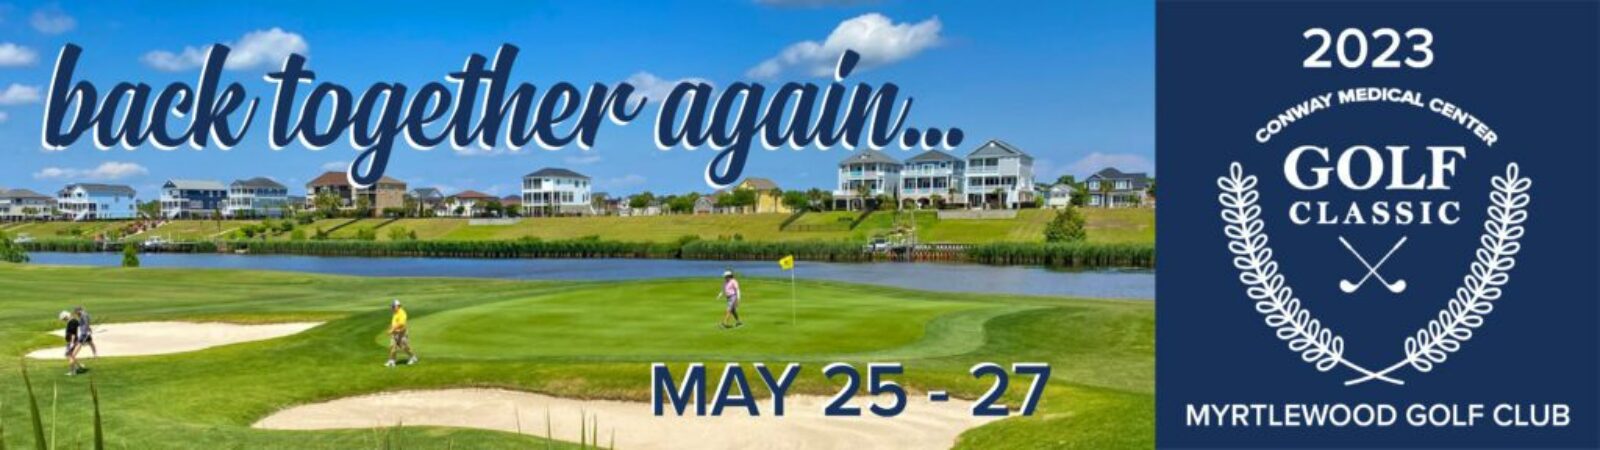 Golf Classic 2023 Website Banner